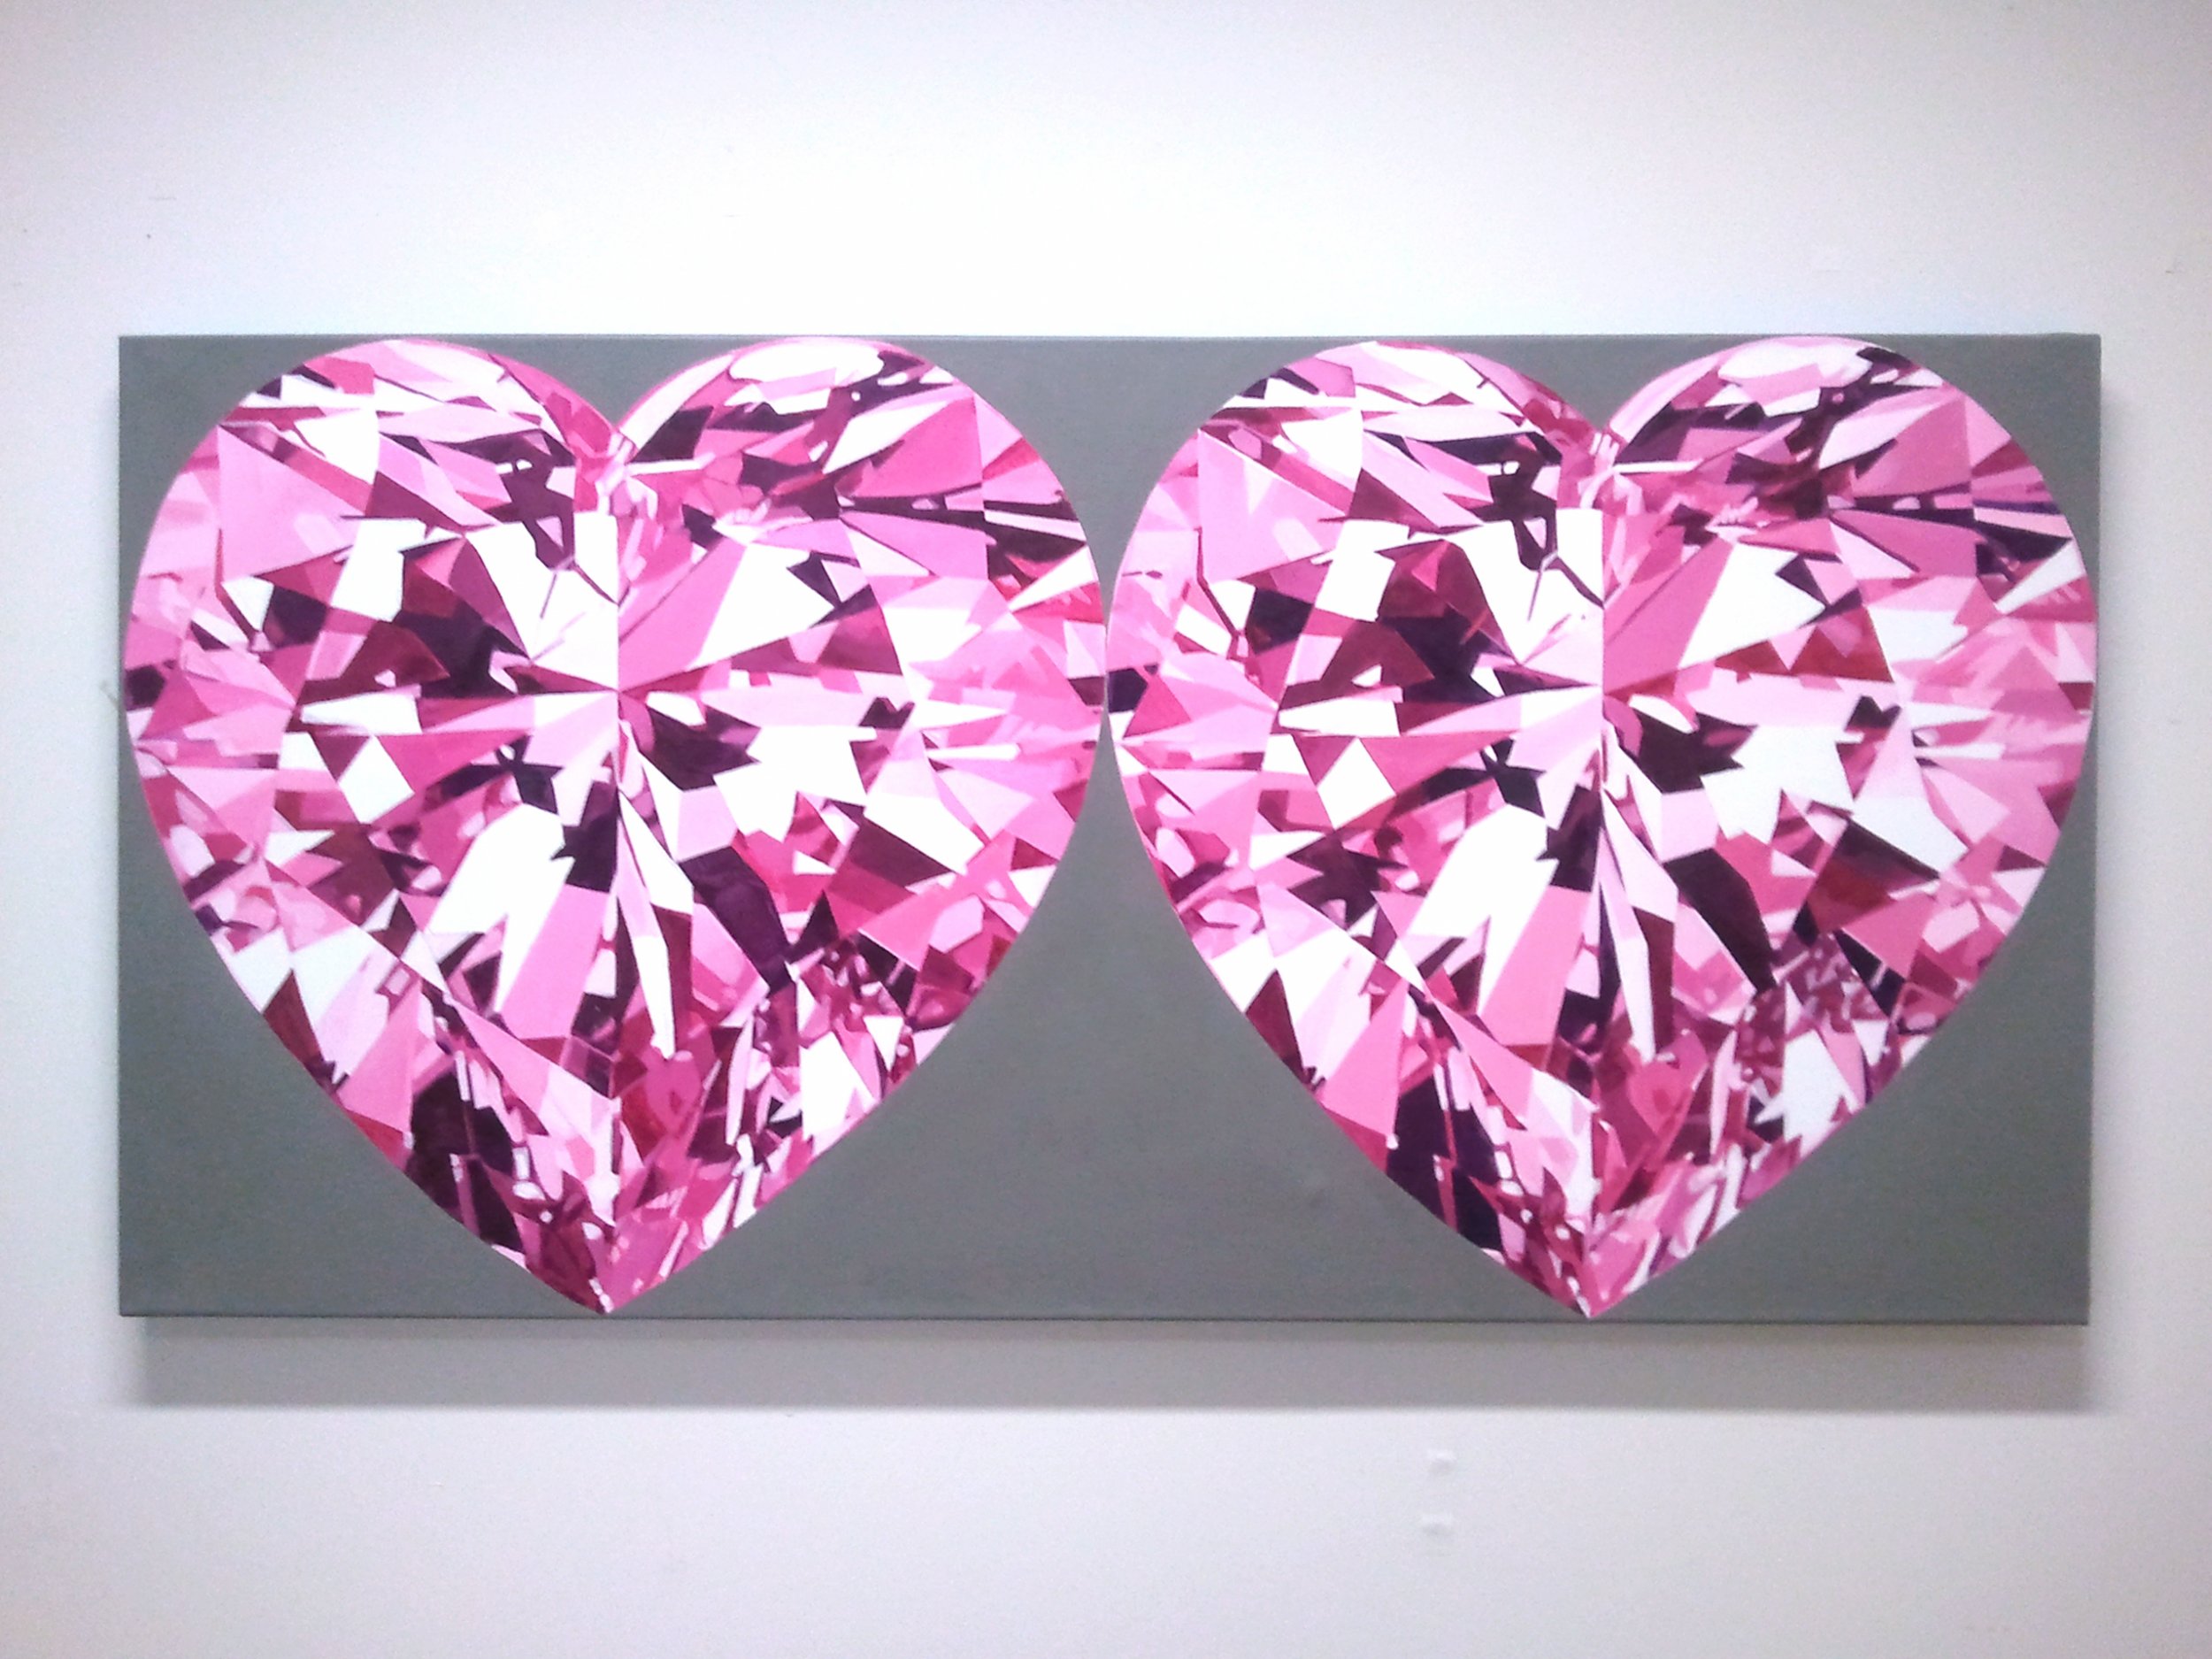 Two Heart Diamond - HD Wallpaper 